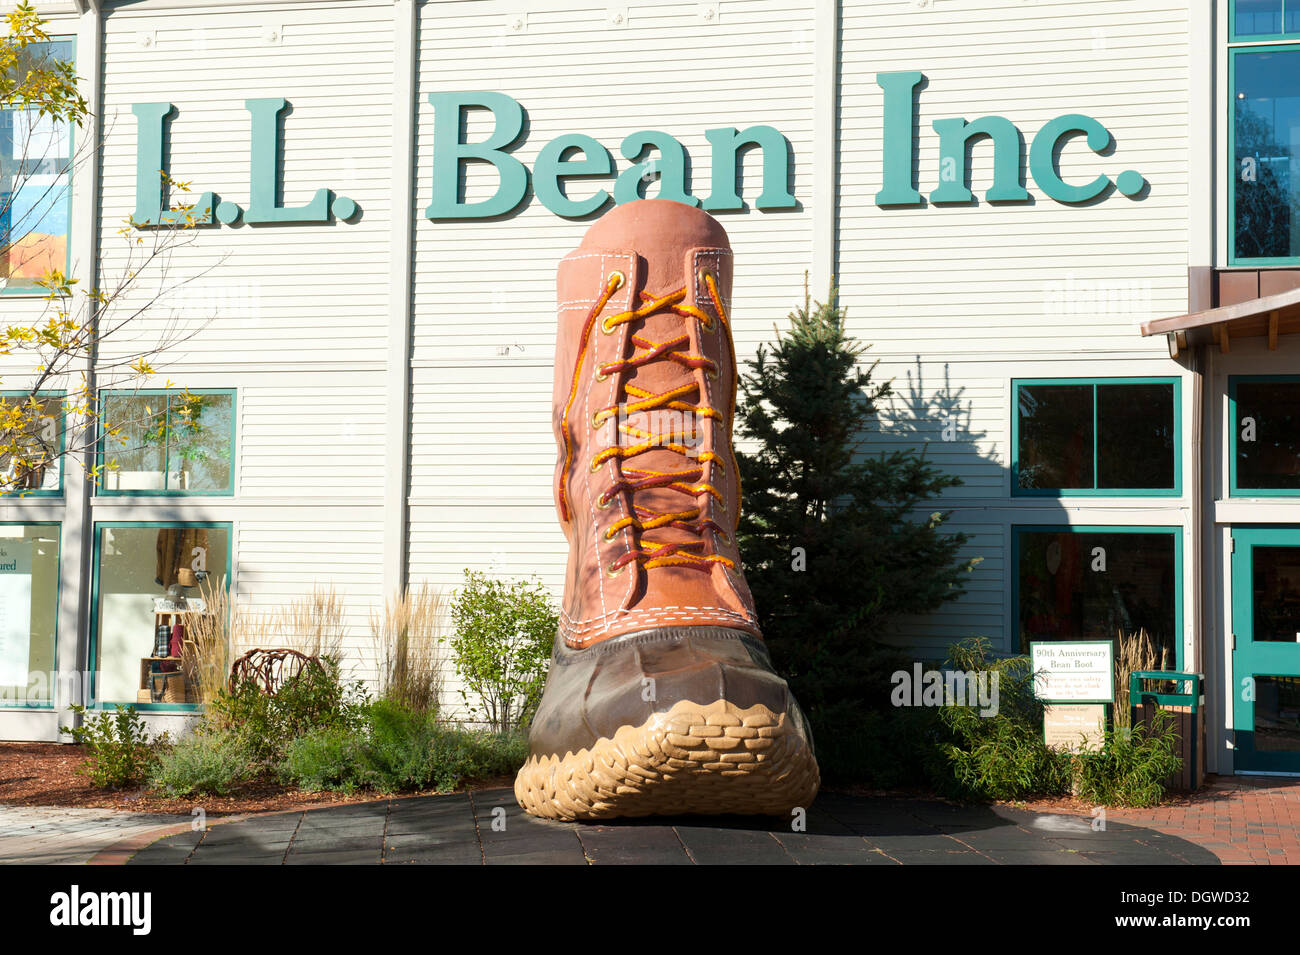 Logo et d'un grand coffre, sortie shopping, les pourvoiries L. L. Bean, Freeport, Maine, la Nouvelle Angleterre, USA, Amérique du Nord Banque D'Images